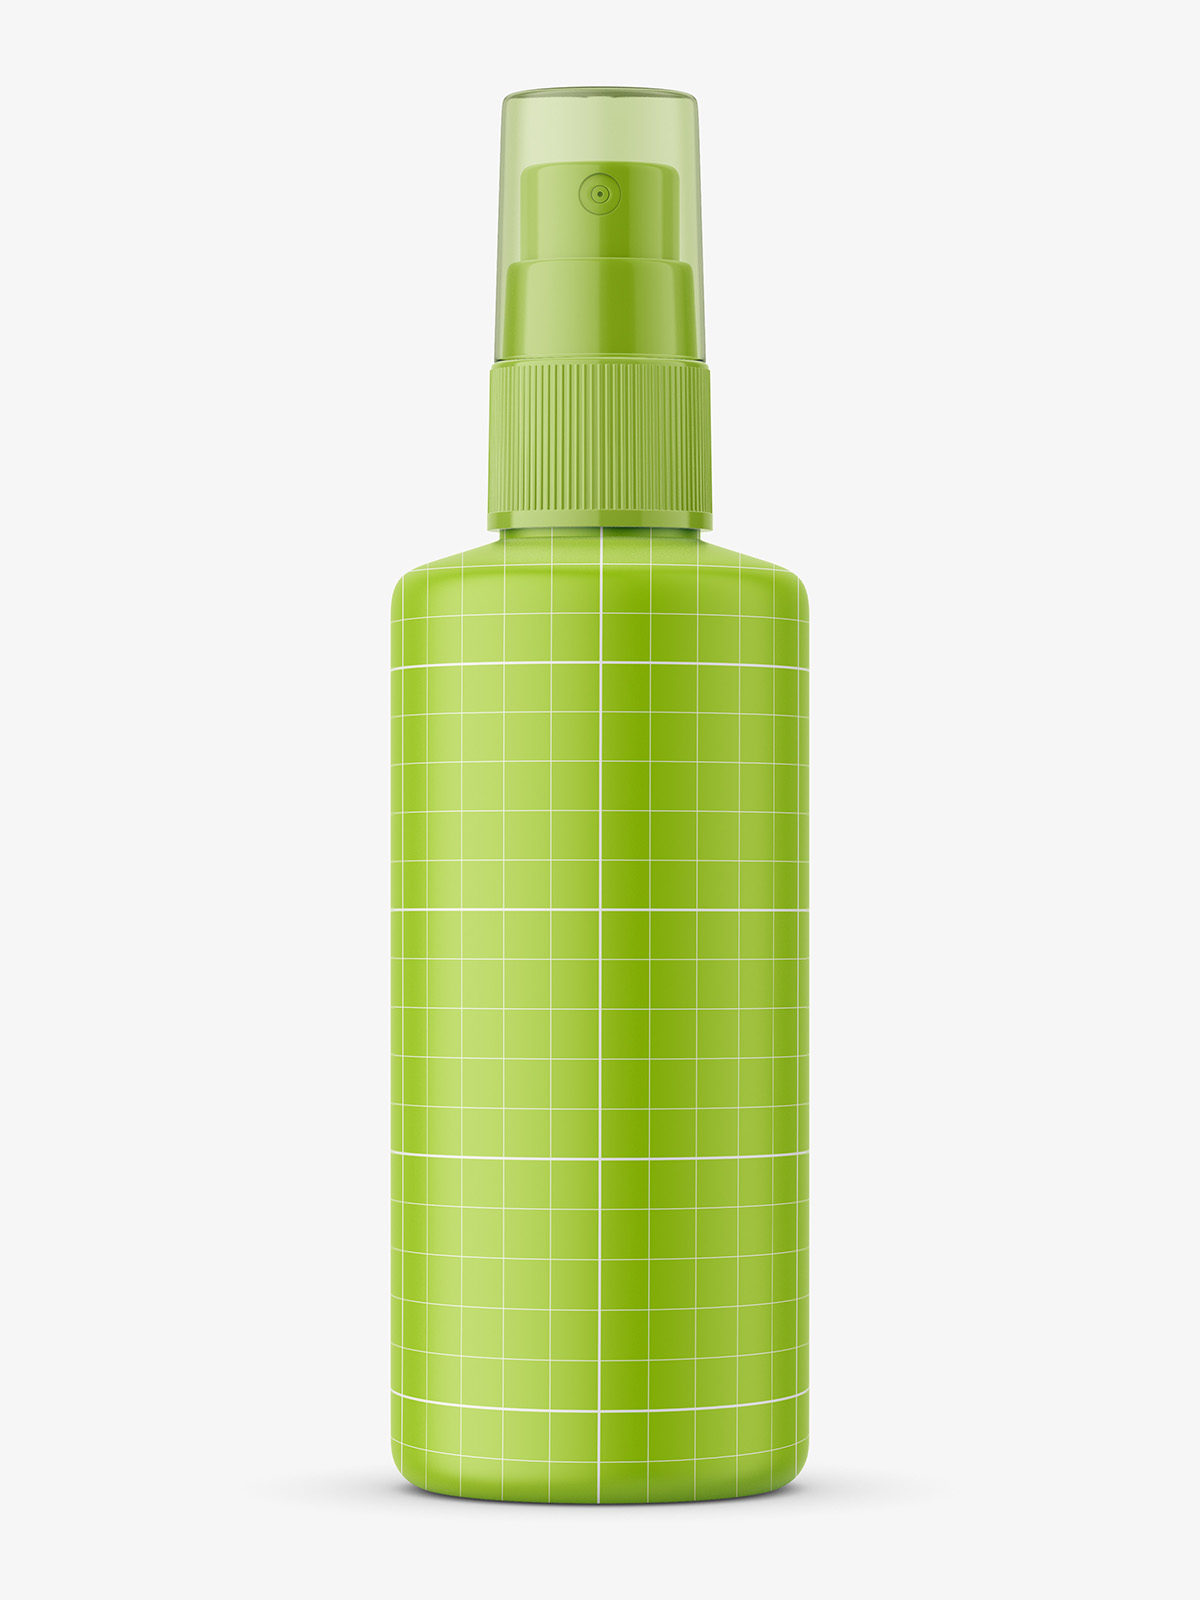 Download Mist spray bottle mockup / 100 ml - Smarty Mockups